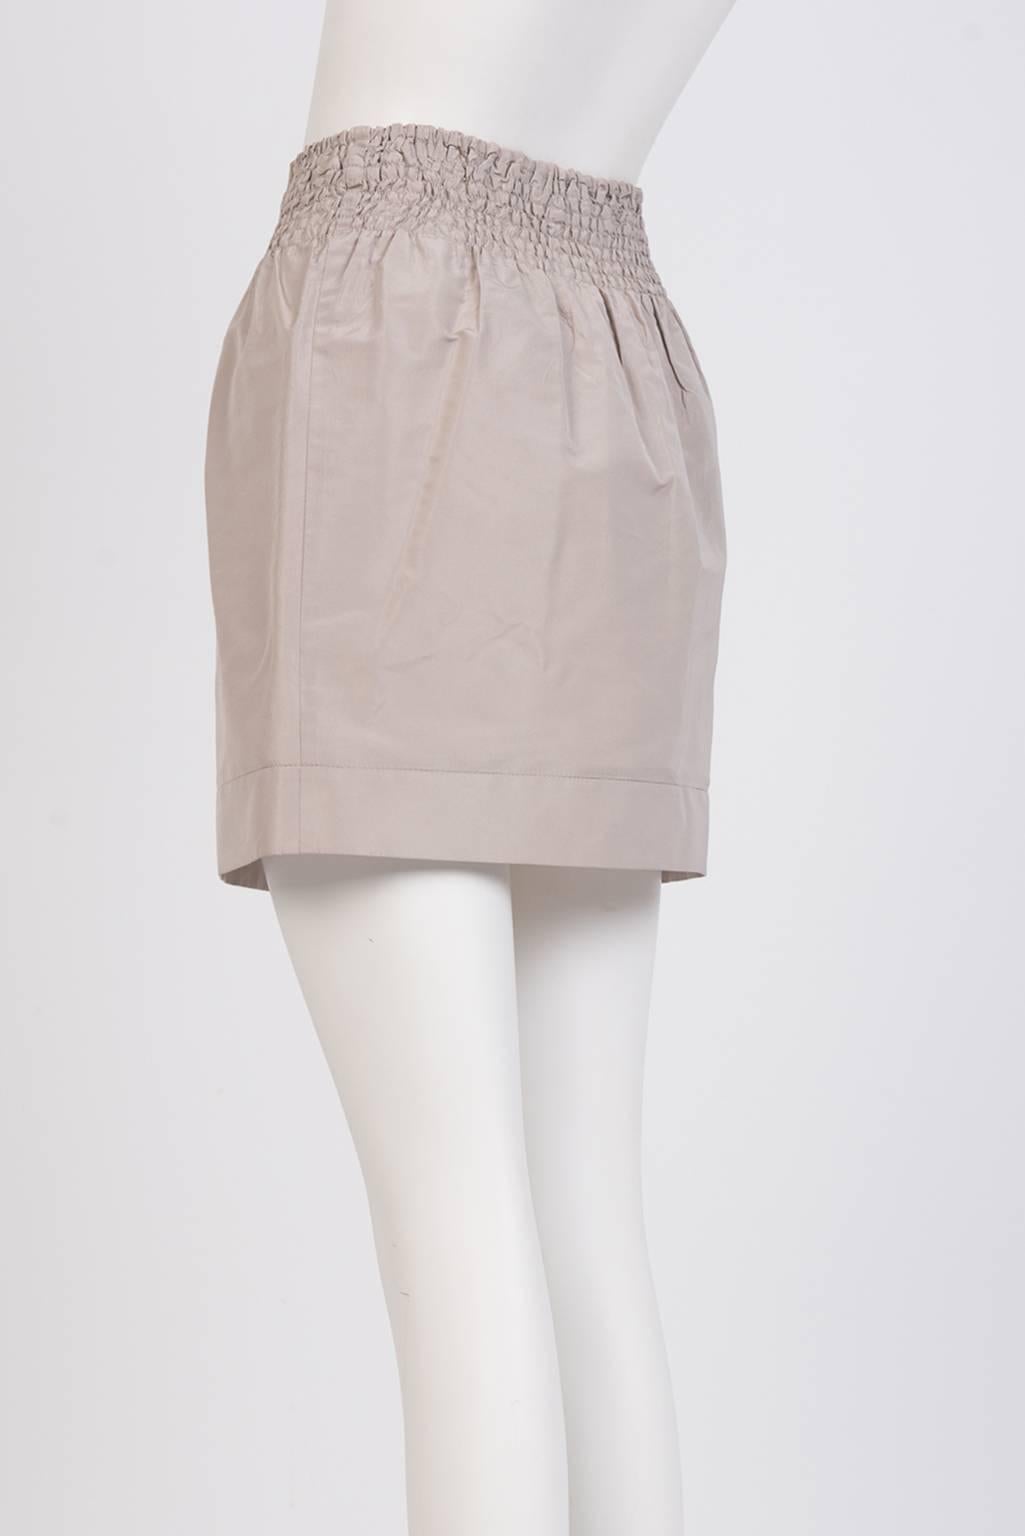 Miu Miu Technical Fabric Short Skirt In New Condition For Sale In Xiamen, Fujian